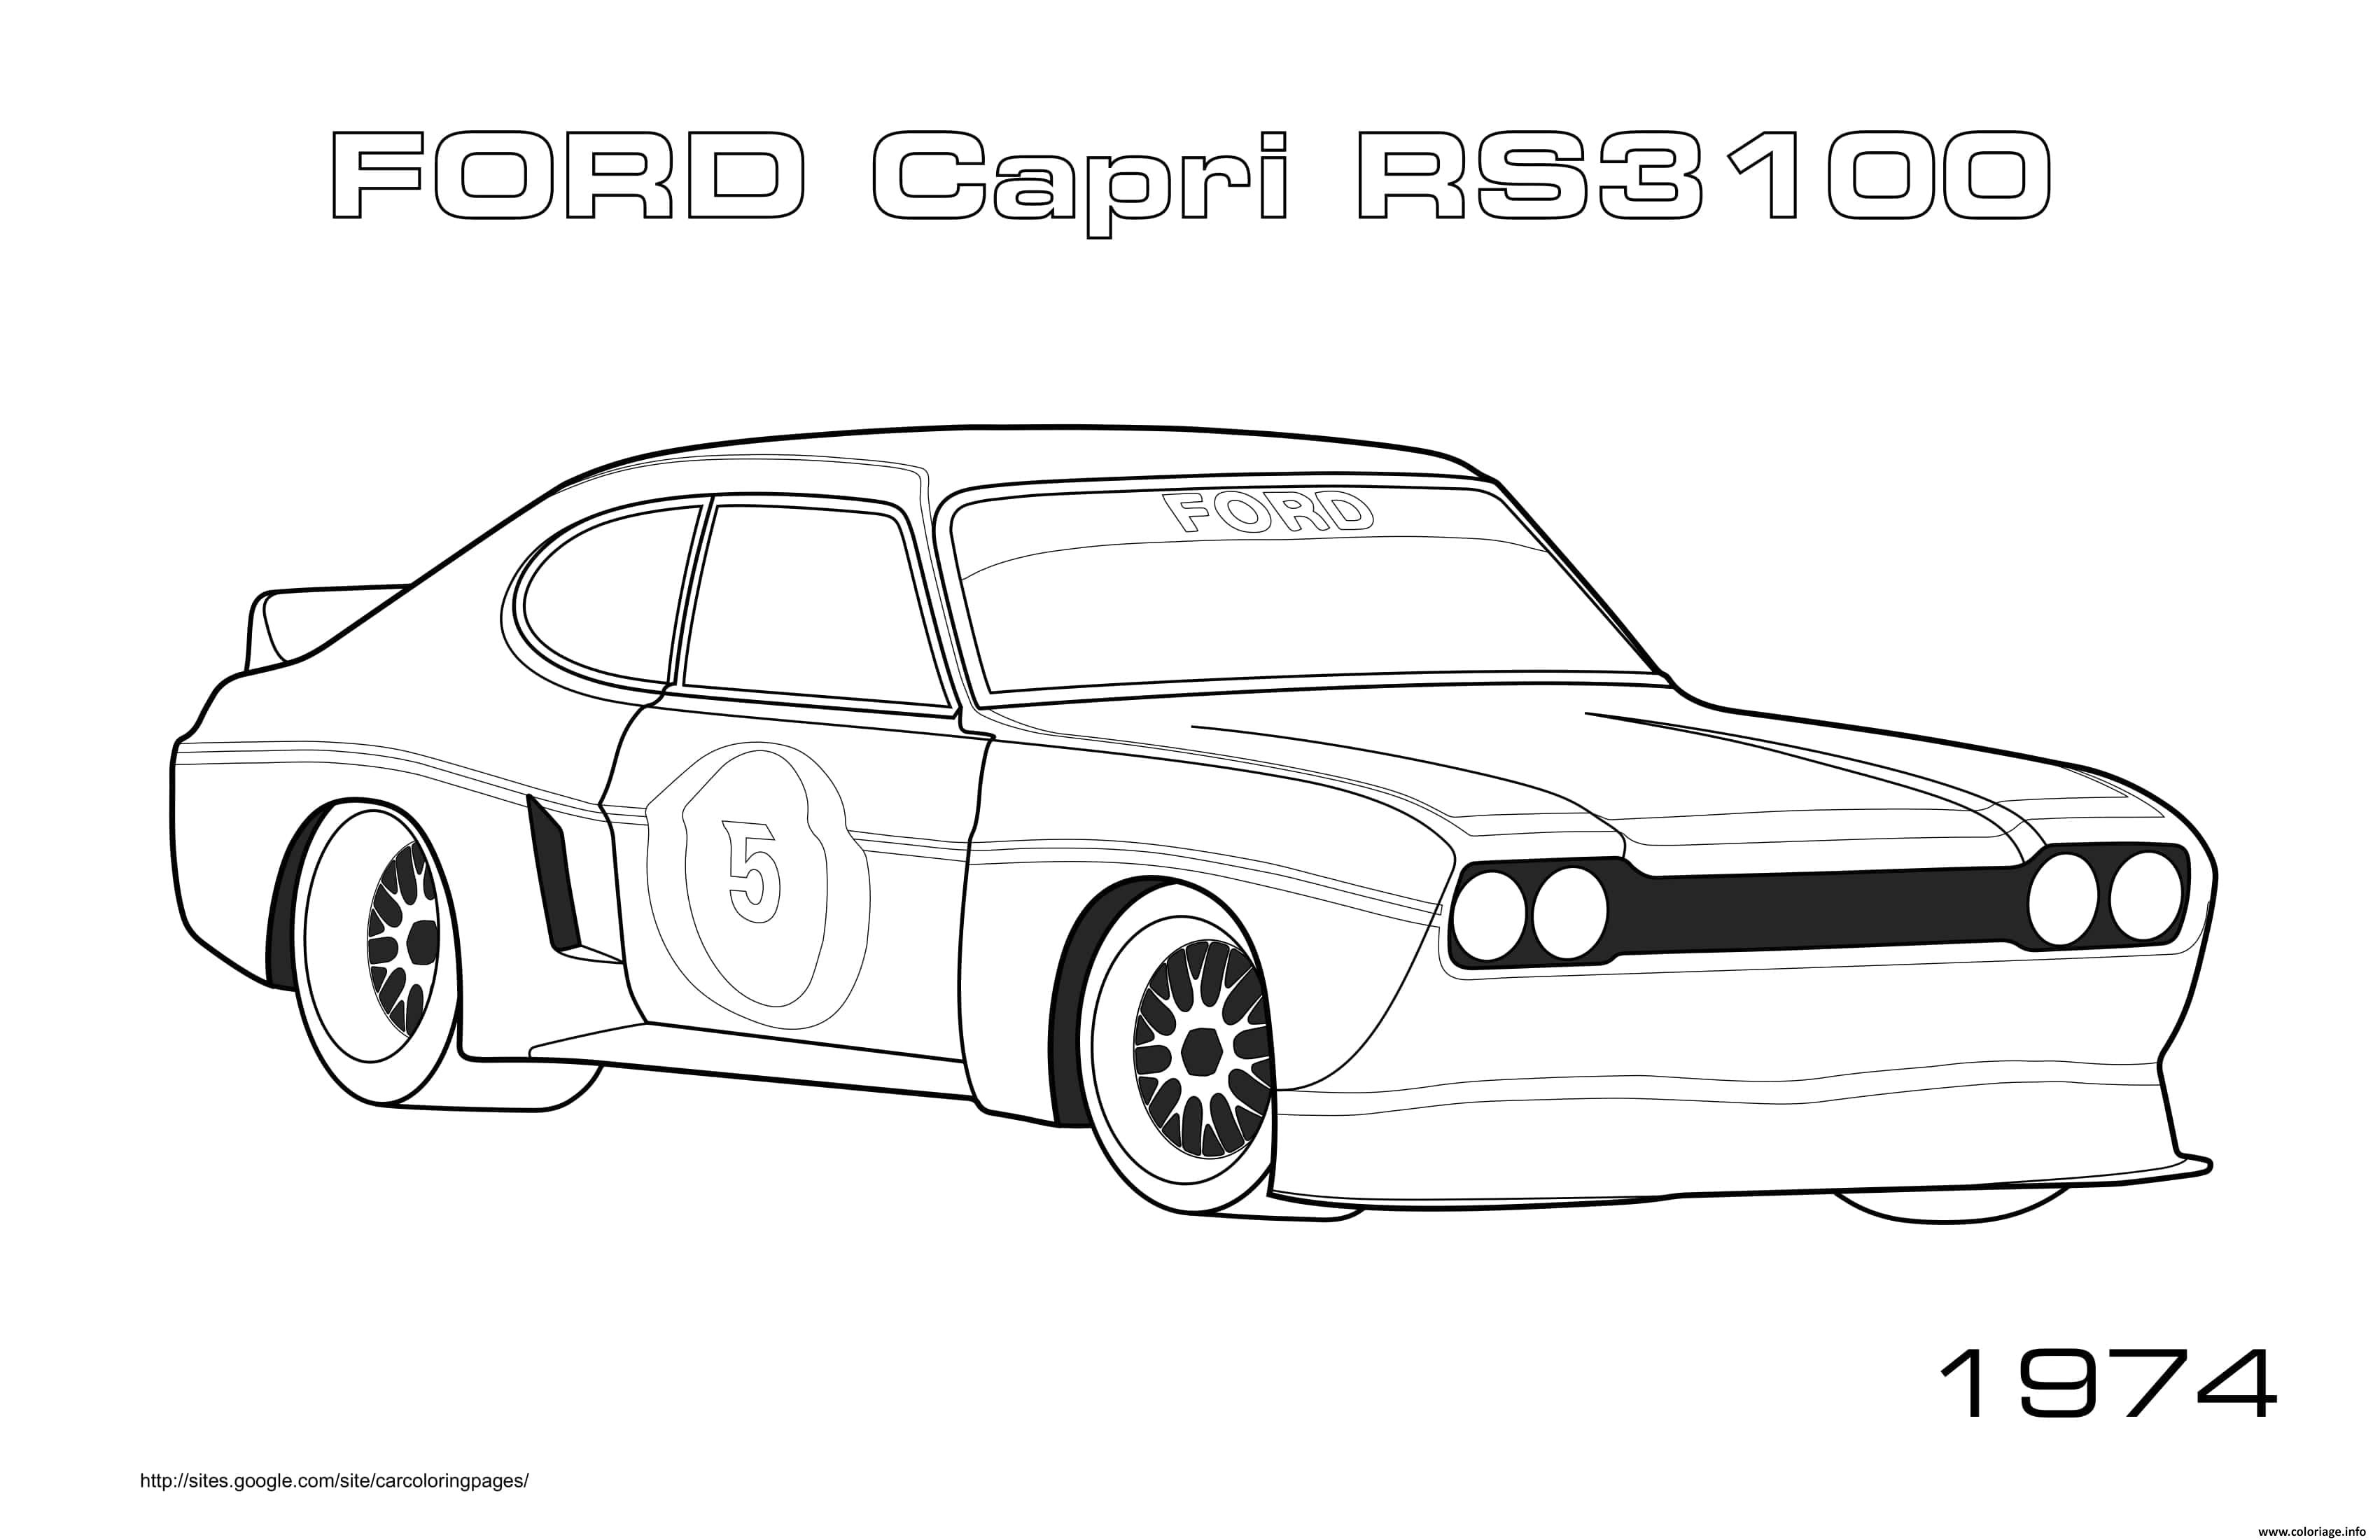 Dessin Ford Capri Rs3100 1974 Coloriage Gratuit à Imprimer